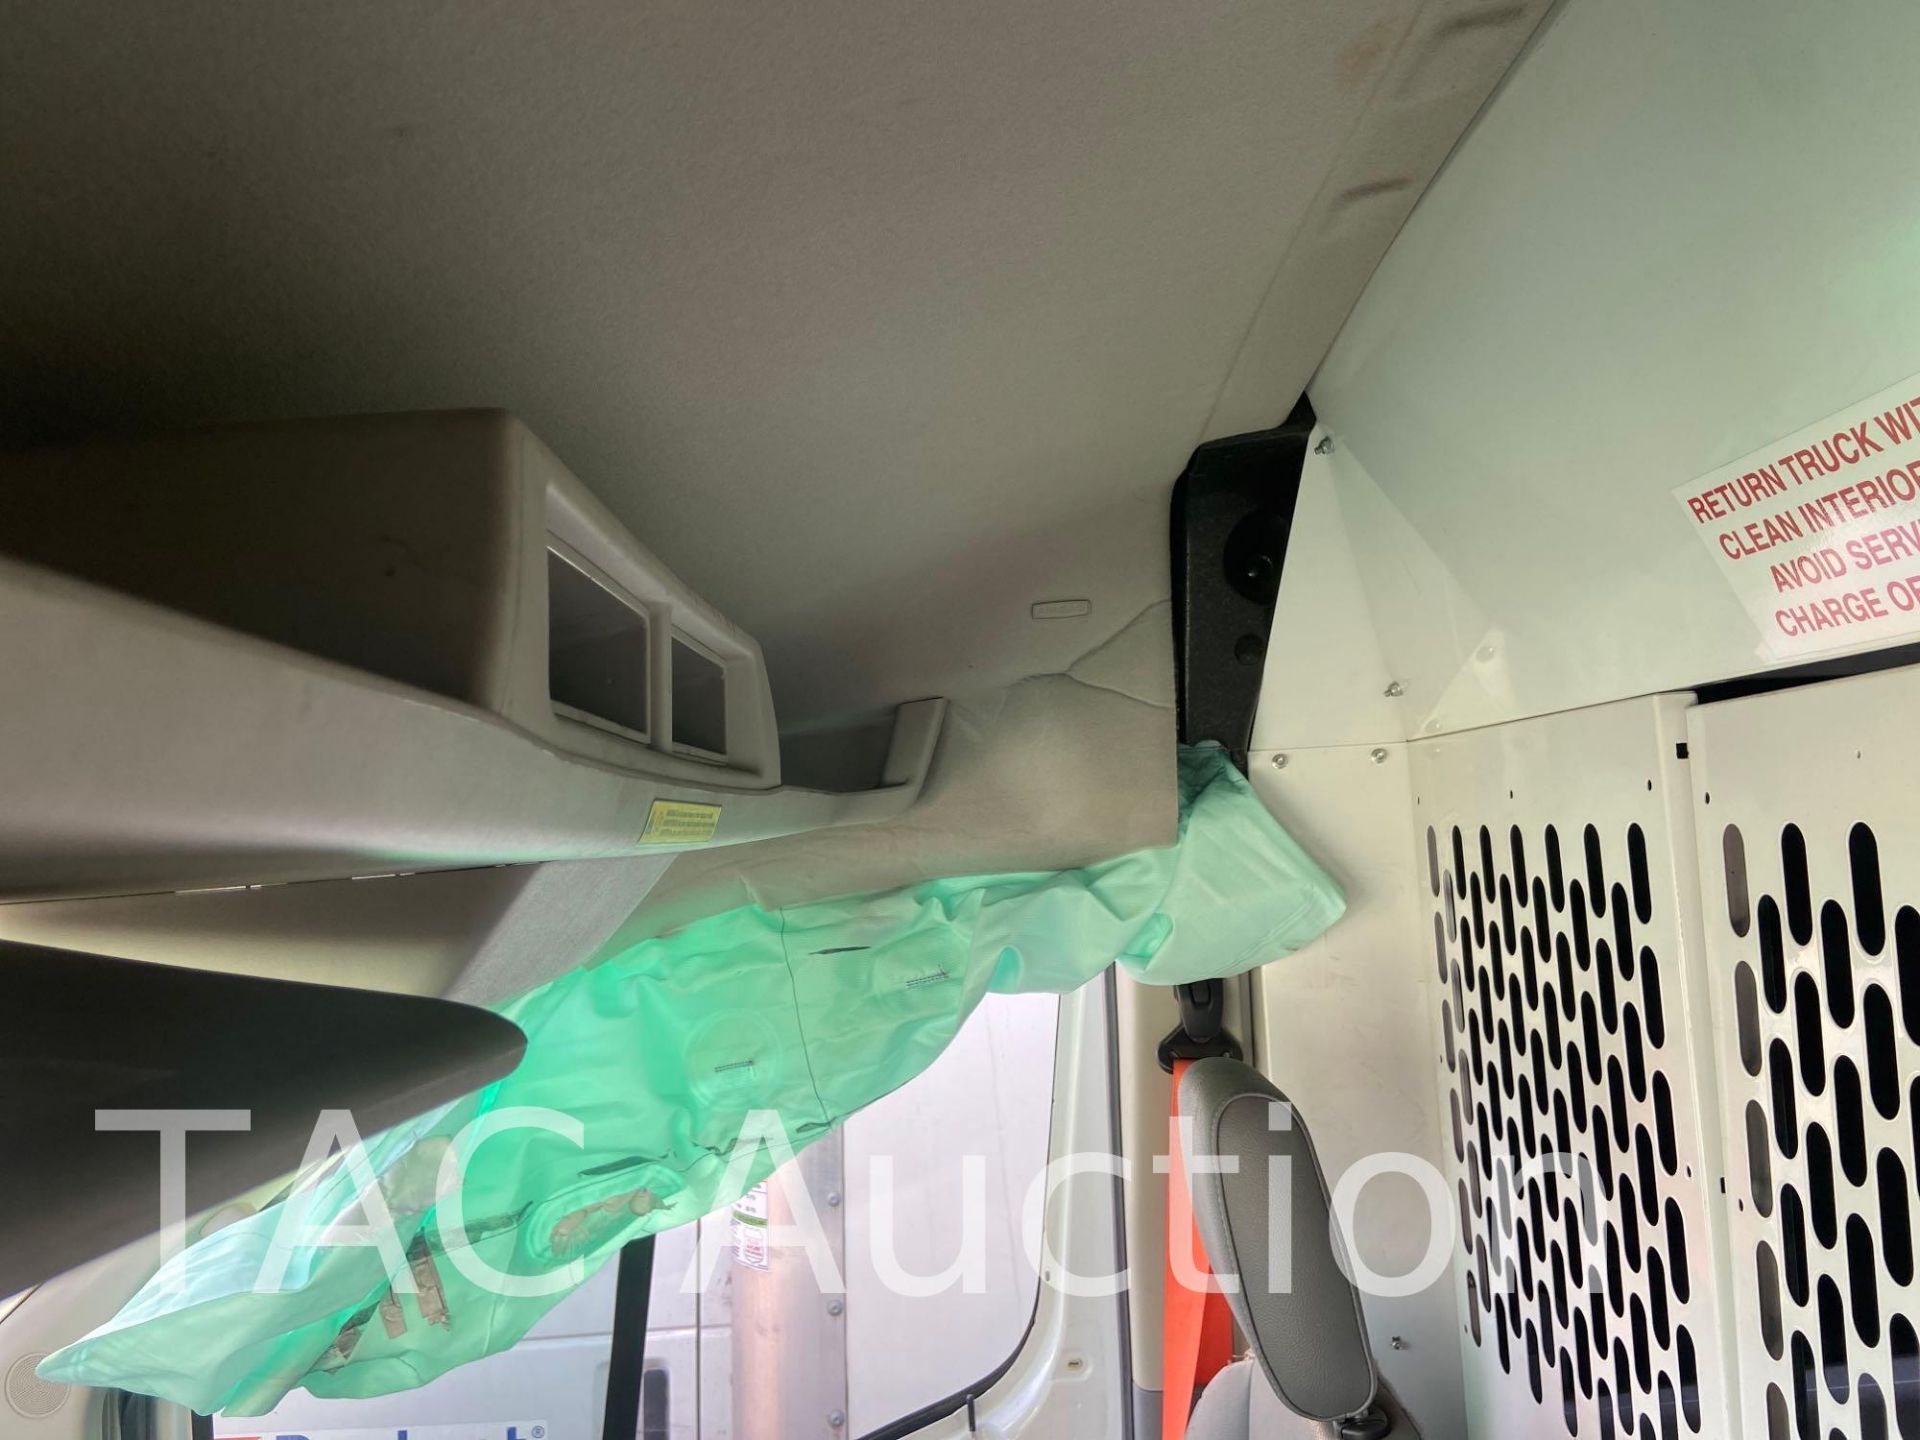 2019 Ford Transit 150 Cargo Van - Image 28 of 84